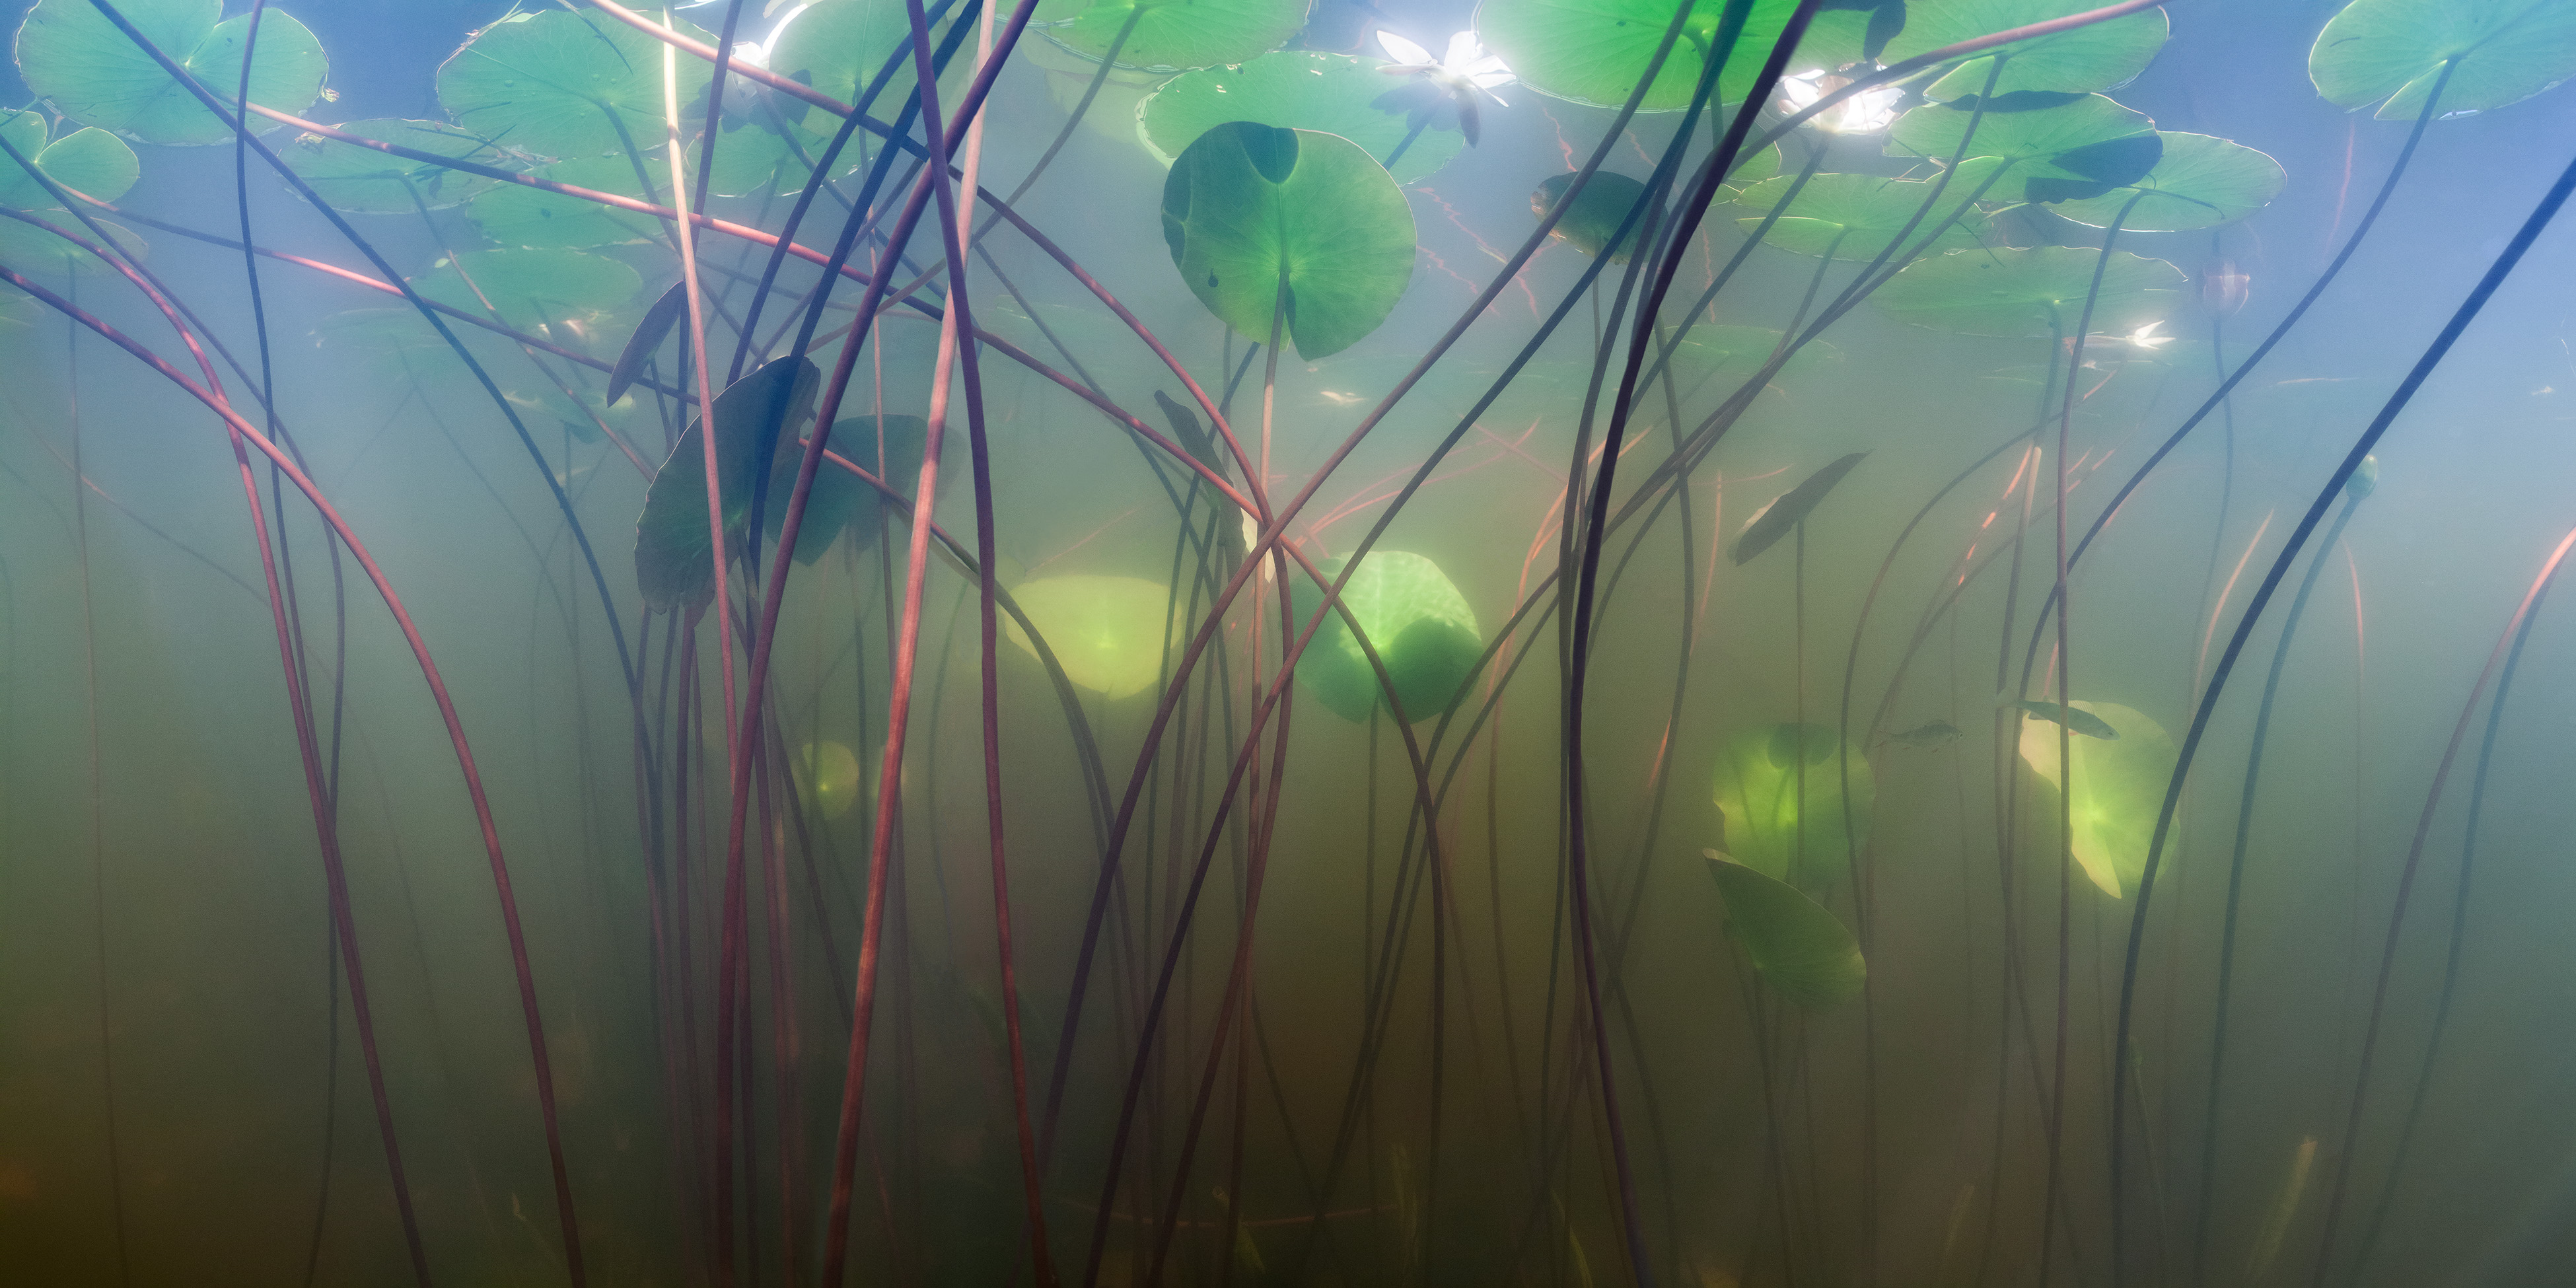 Näckrosor fotograferade under vattnet i en sjö